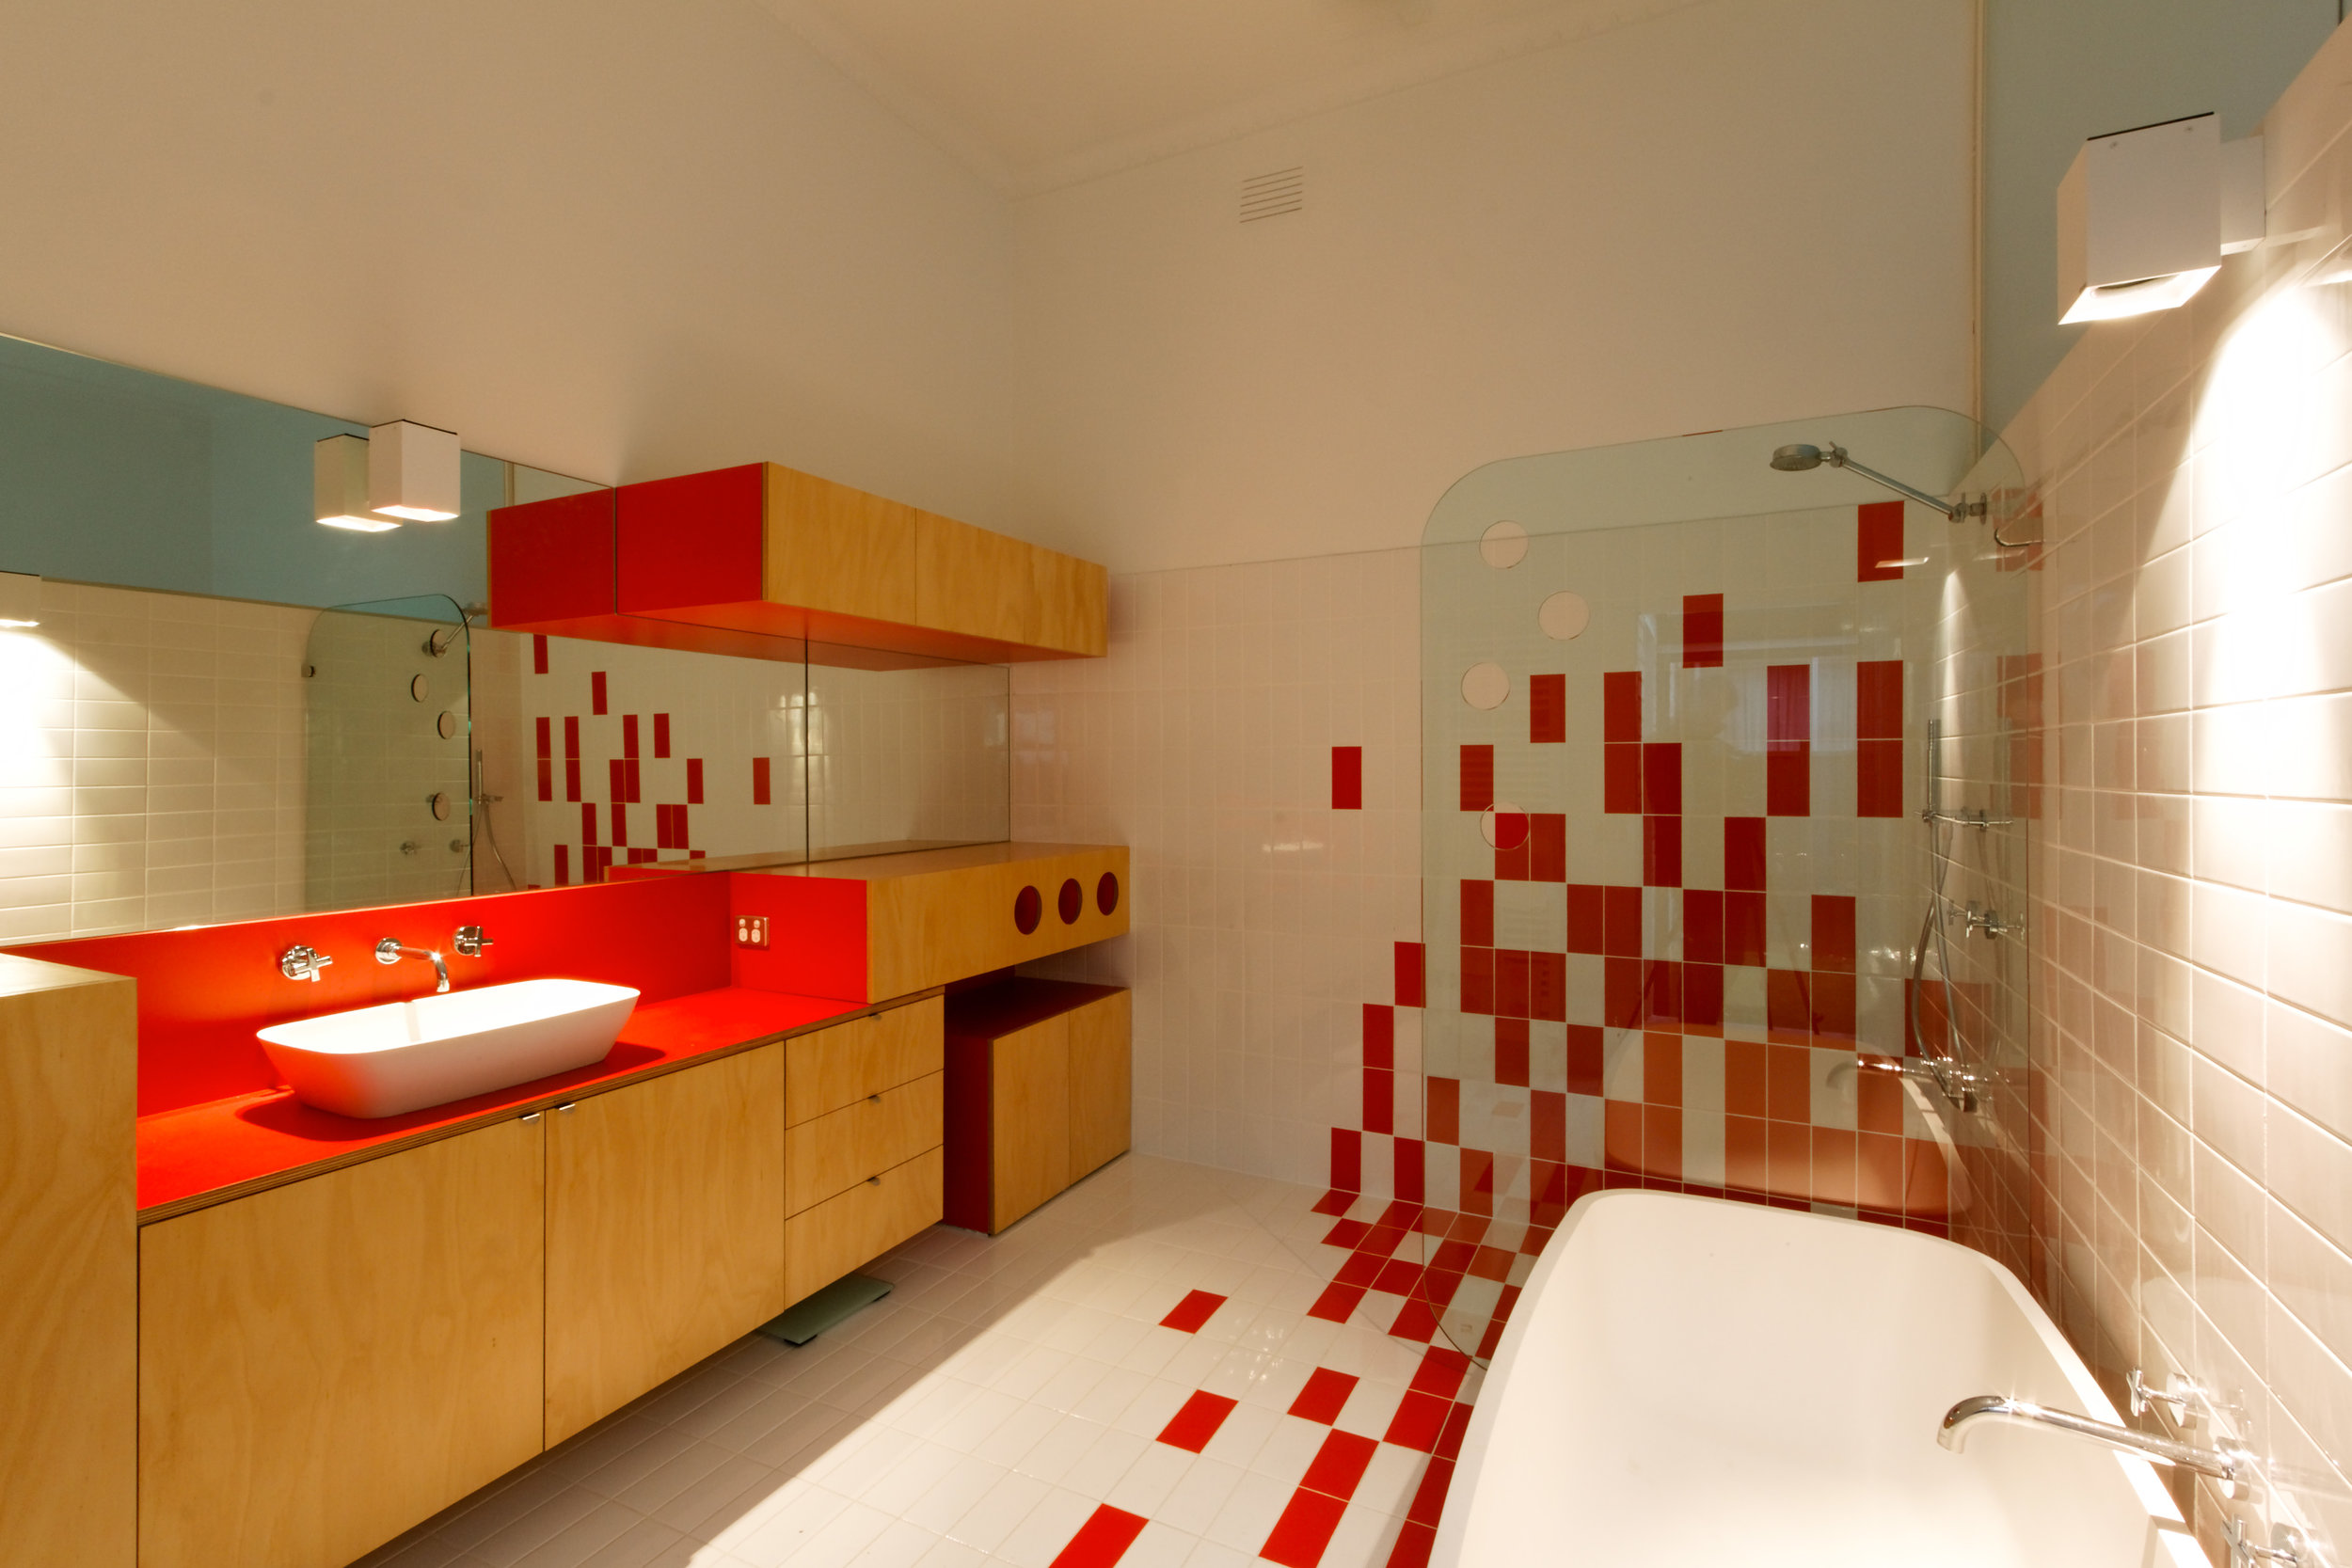 Красная плитка в ванной plitka vanny ru. Красно белая ванная комната. Ванная в красно-белом цвете. Ванная в Красном цвете. Ванная комната с красными акцентами.